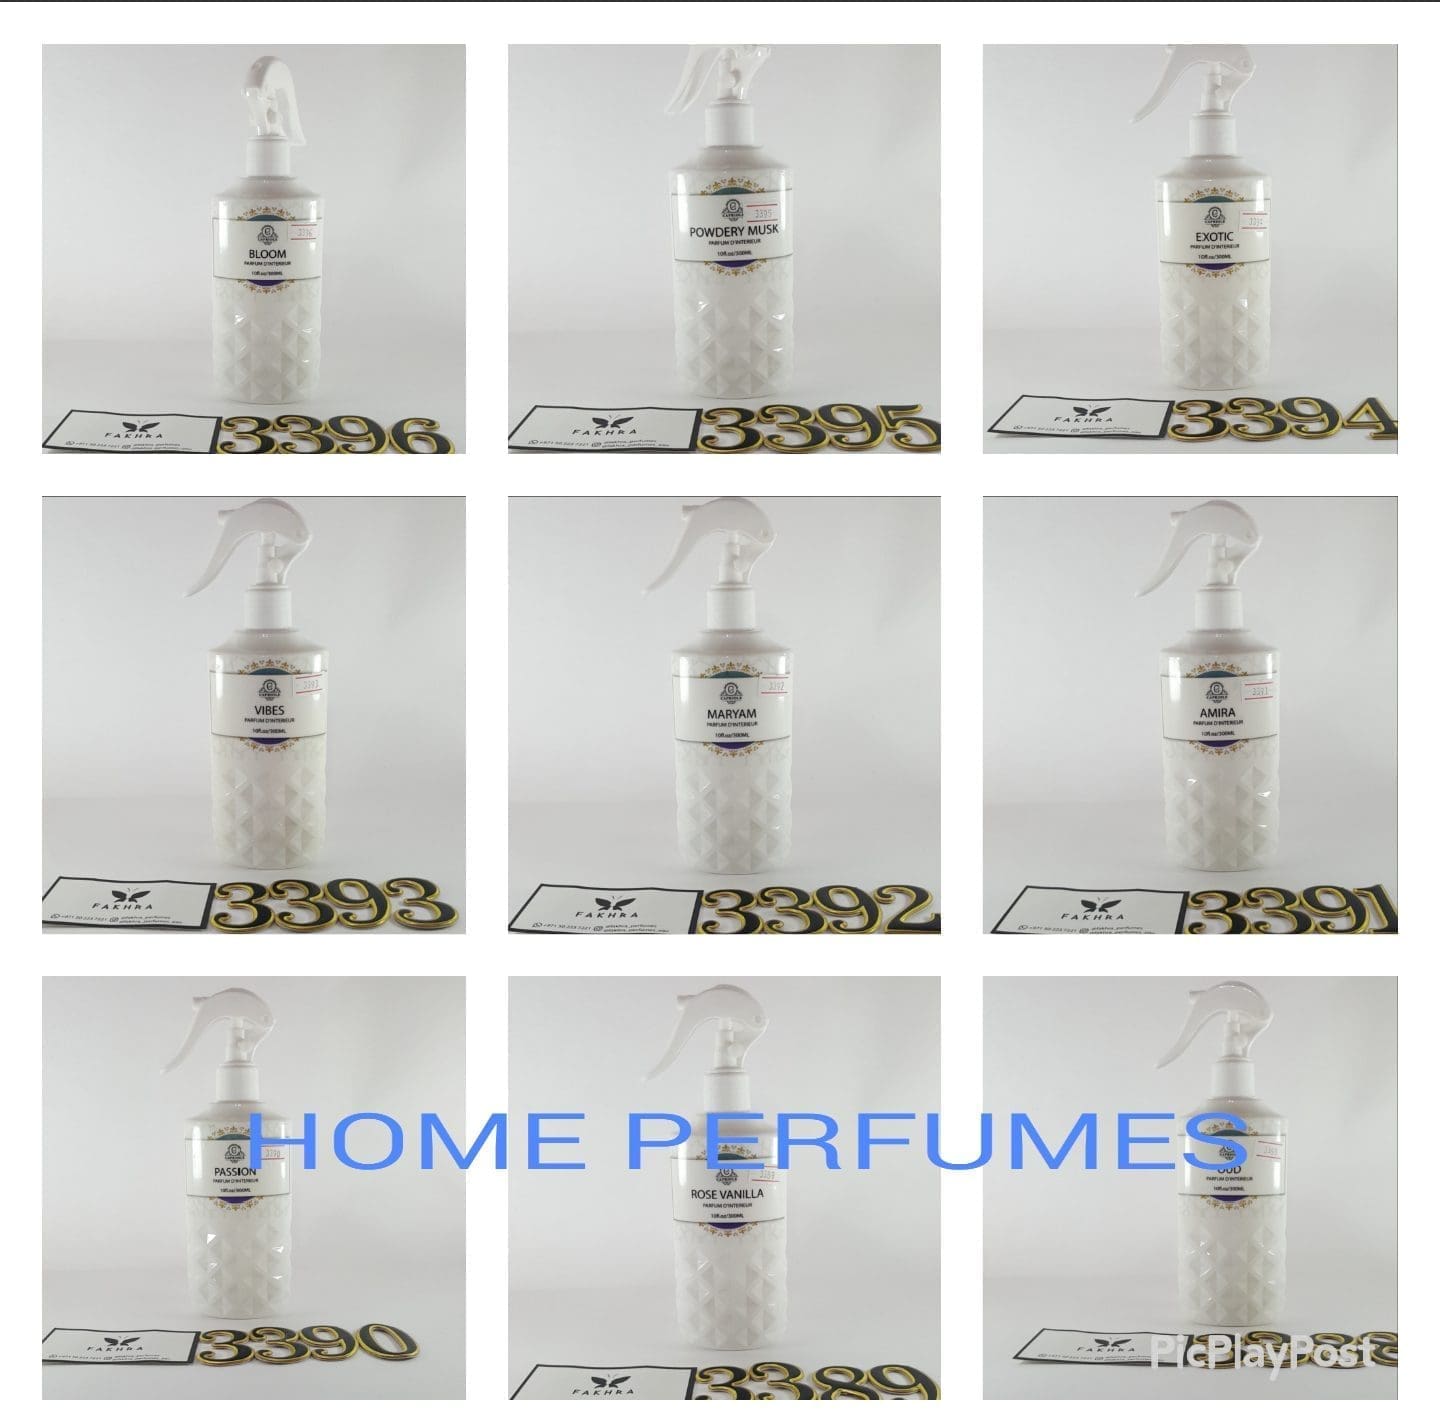 2960 LOUIS VUITTON EDP collection 4x30 ml - Fakhra Perfumes